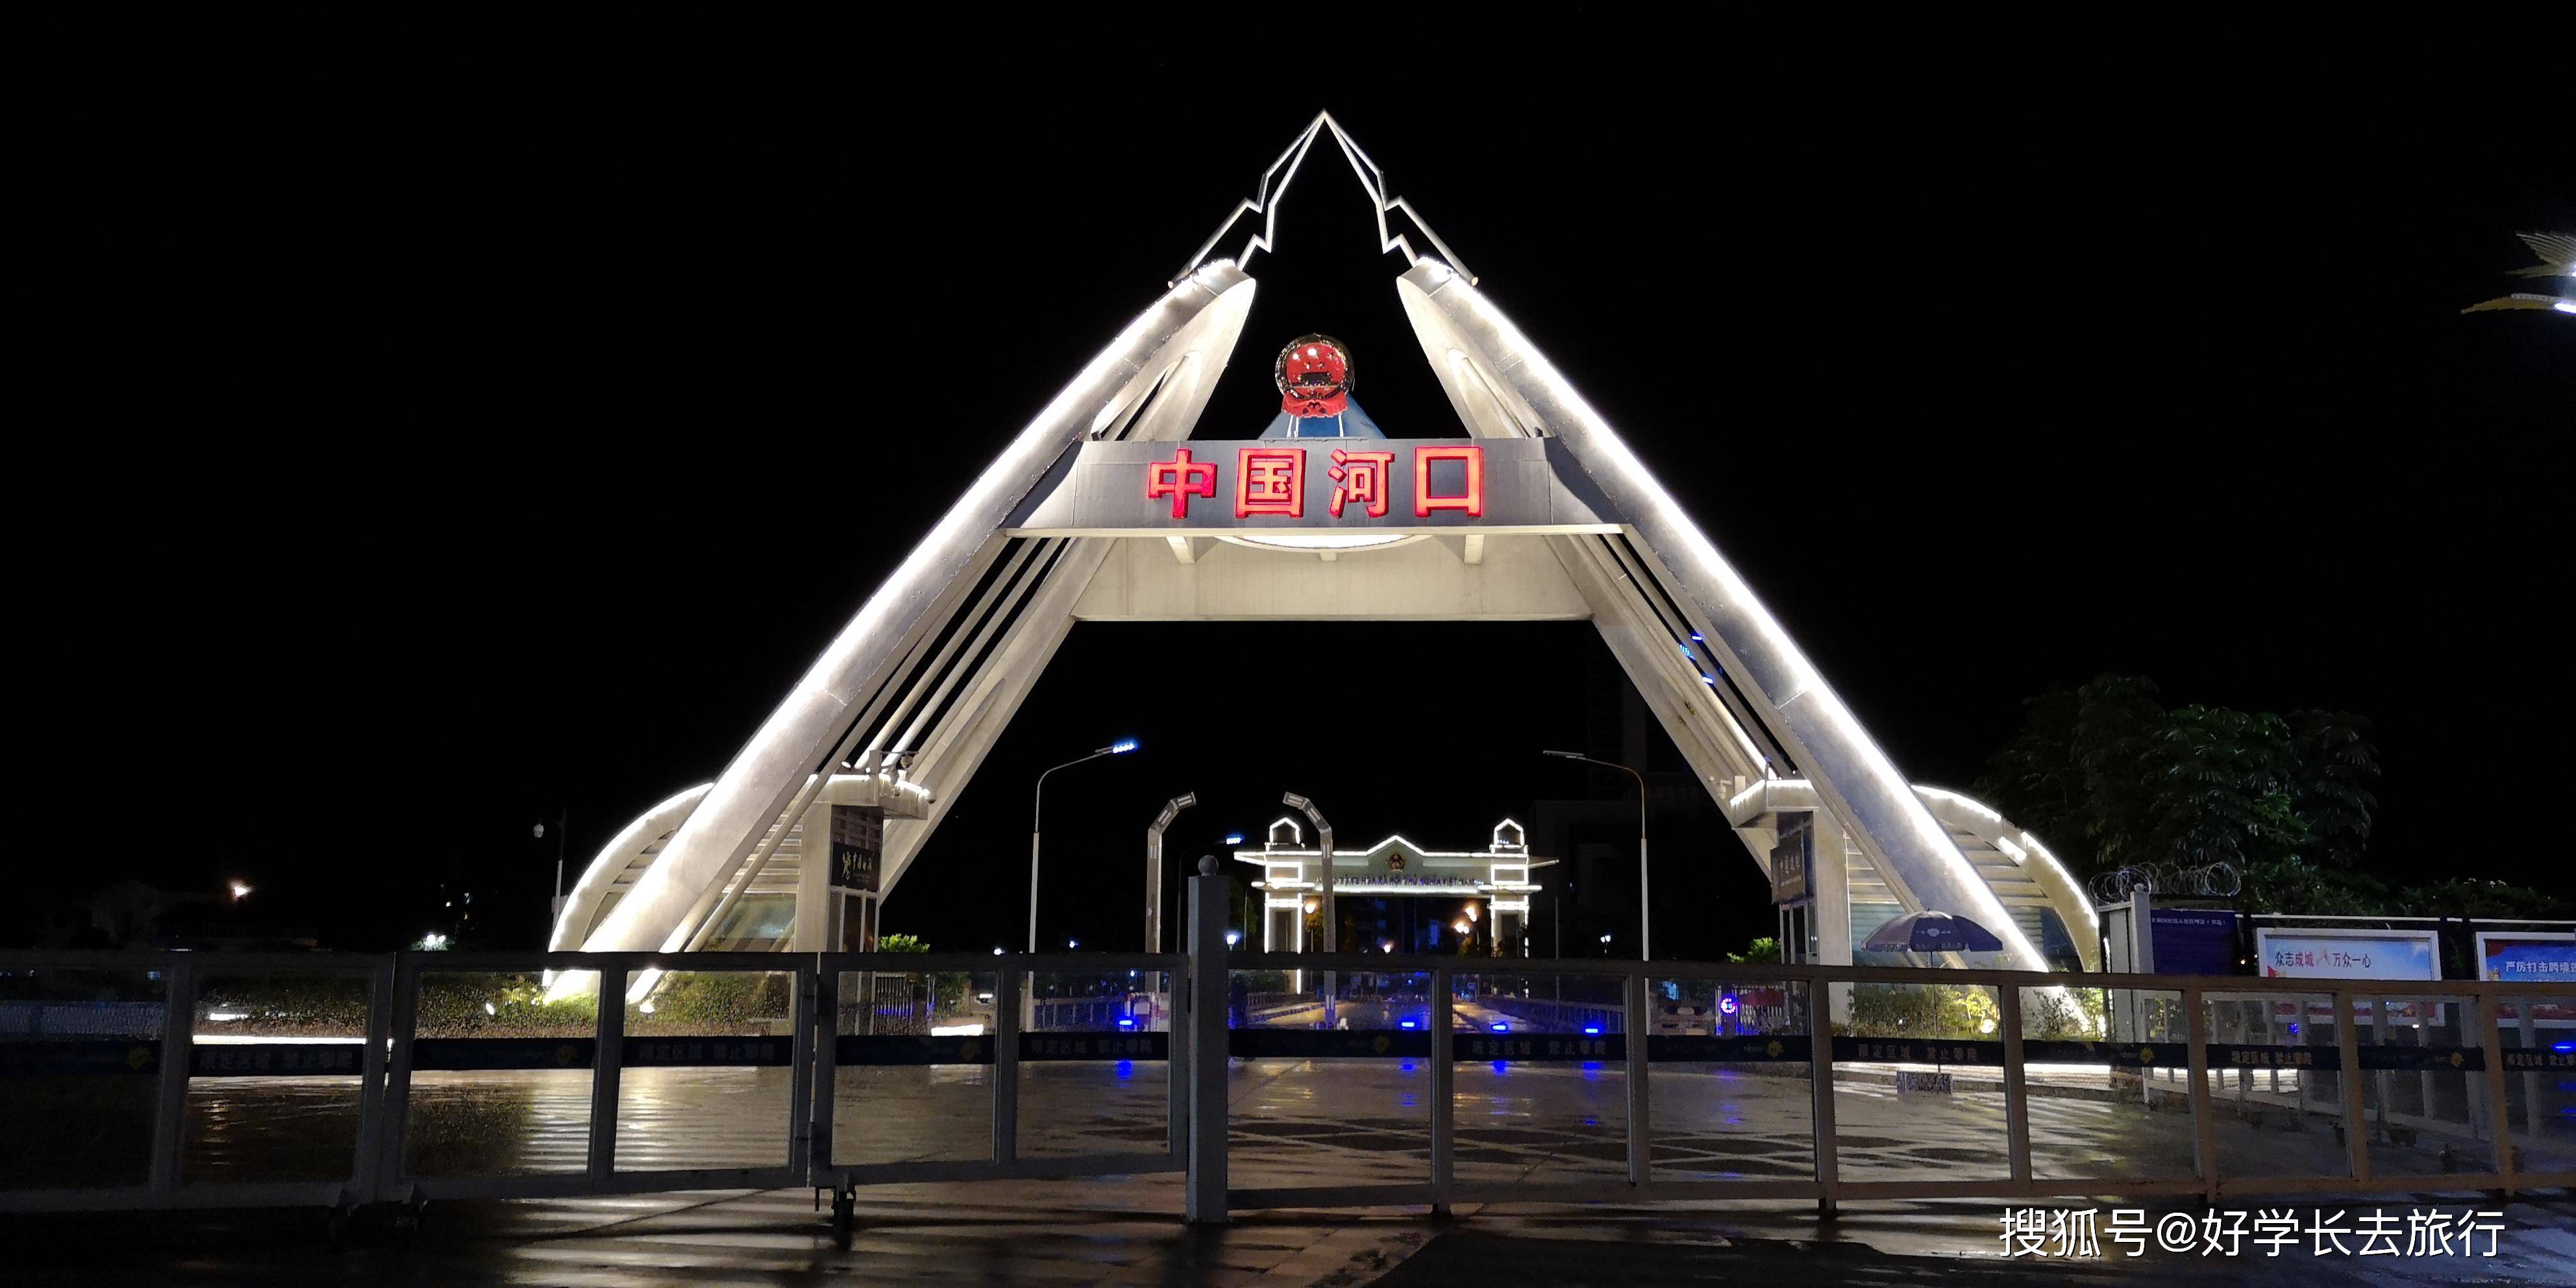 在夜里静静地躺着 刻着"中国·河口"四字的国门 站在中国201(1)号界碑